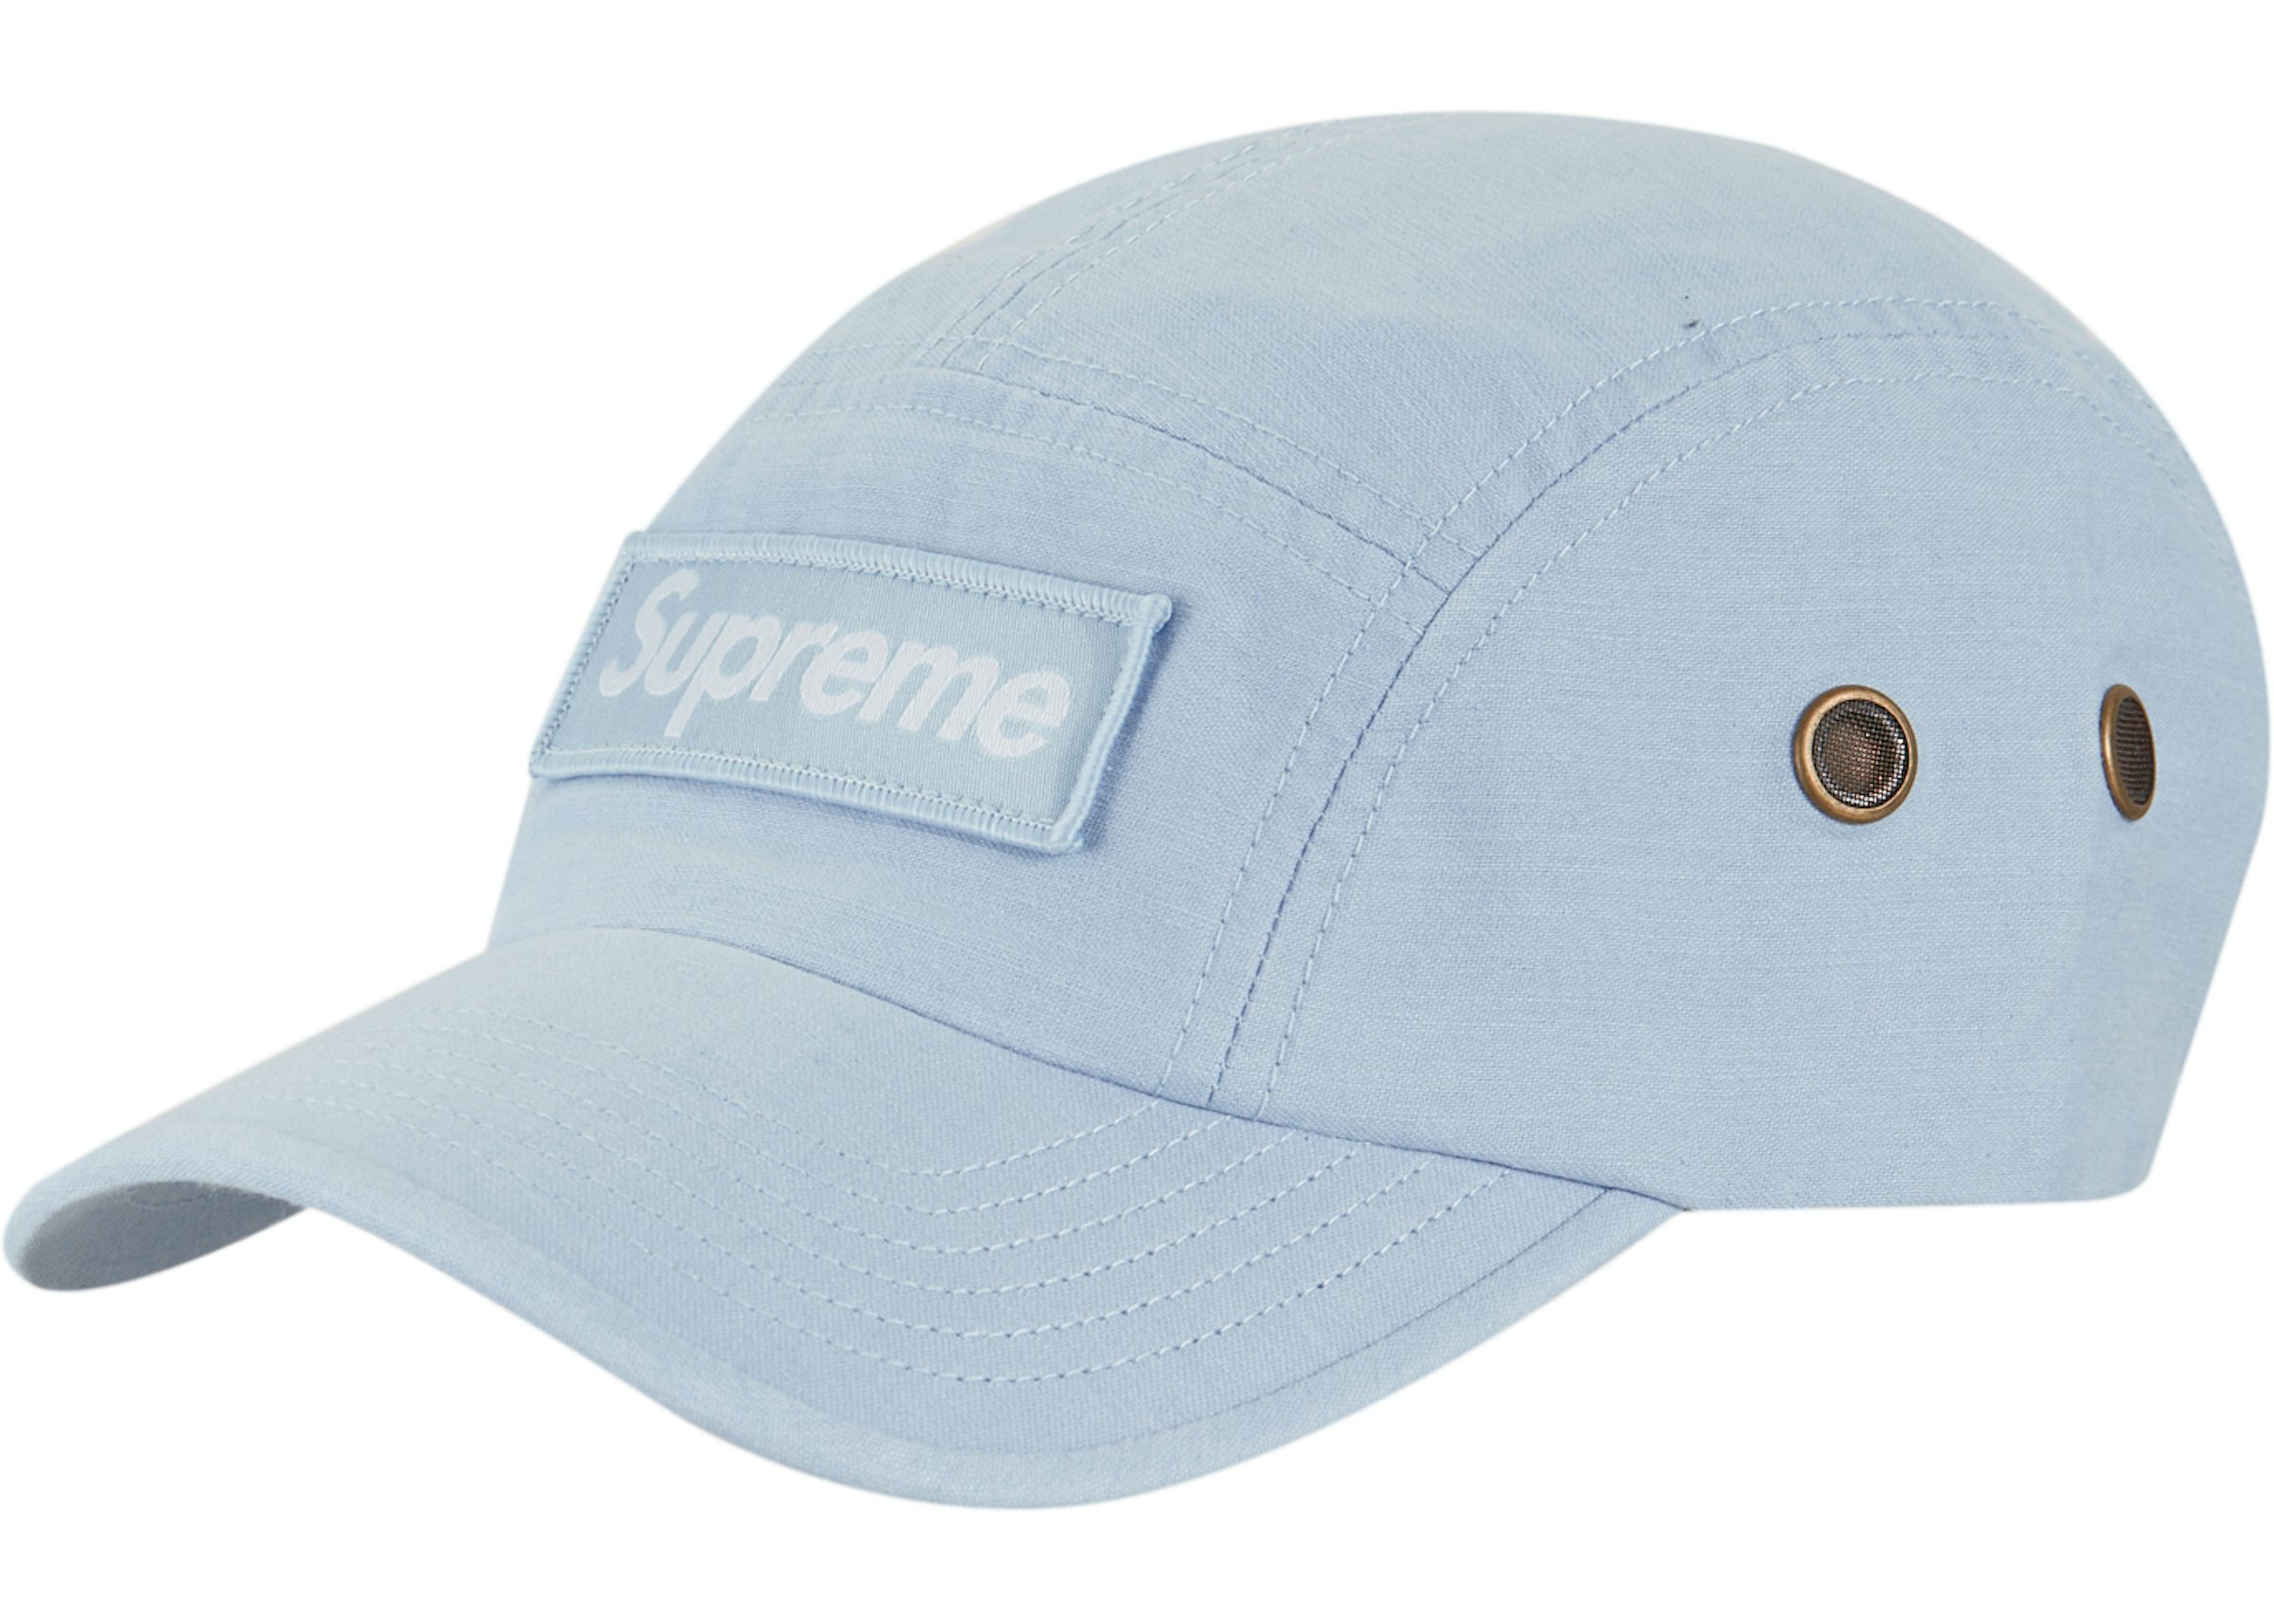 Supreme X Lv Cap / Blue White